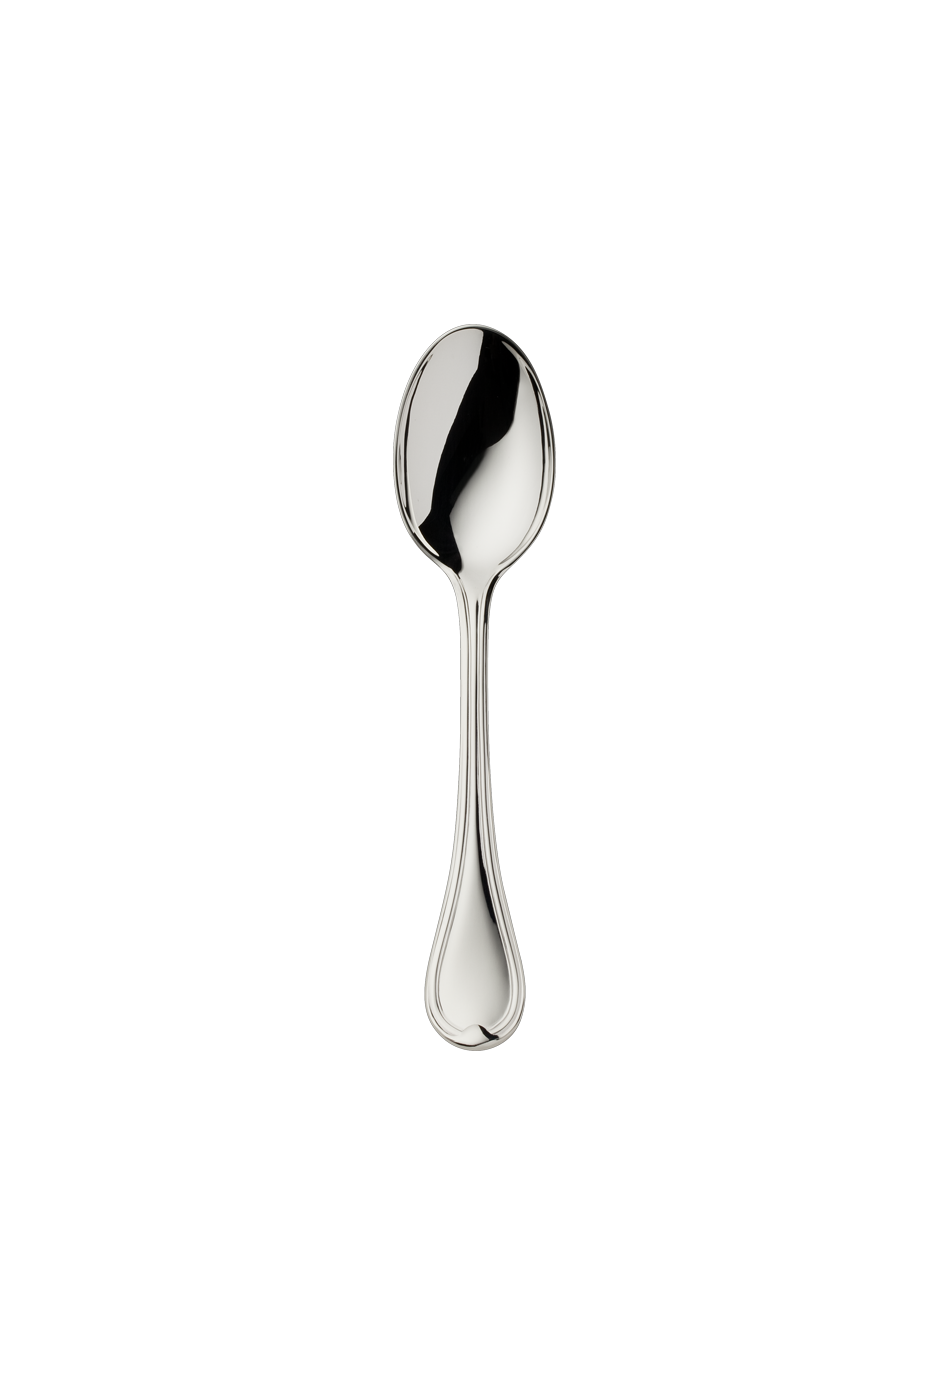 Classic-Faden Children's Spoon (150g massive silverplated)